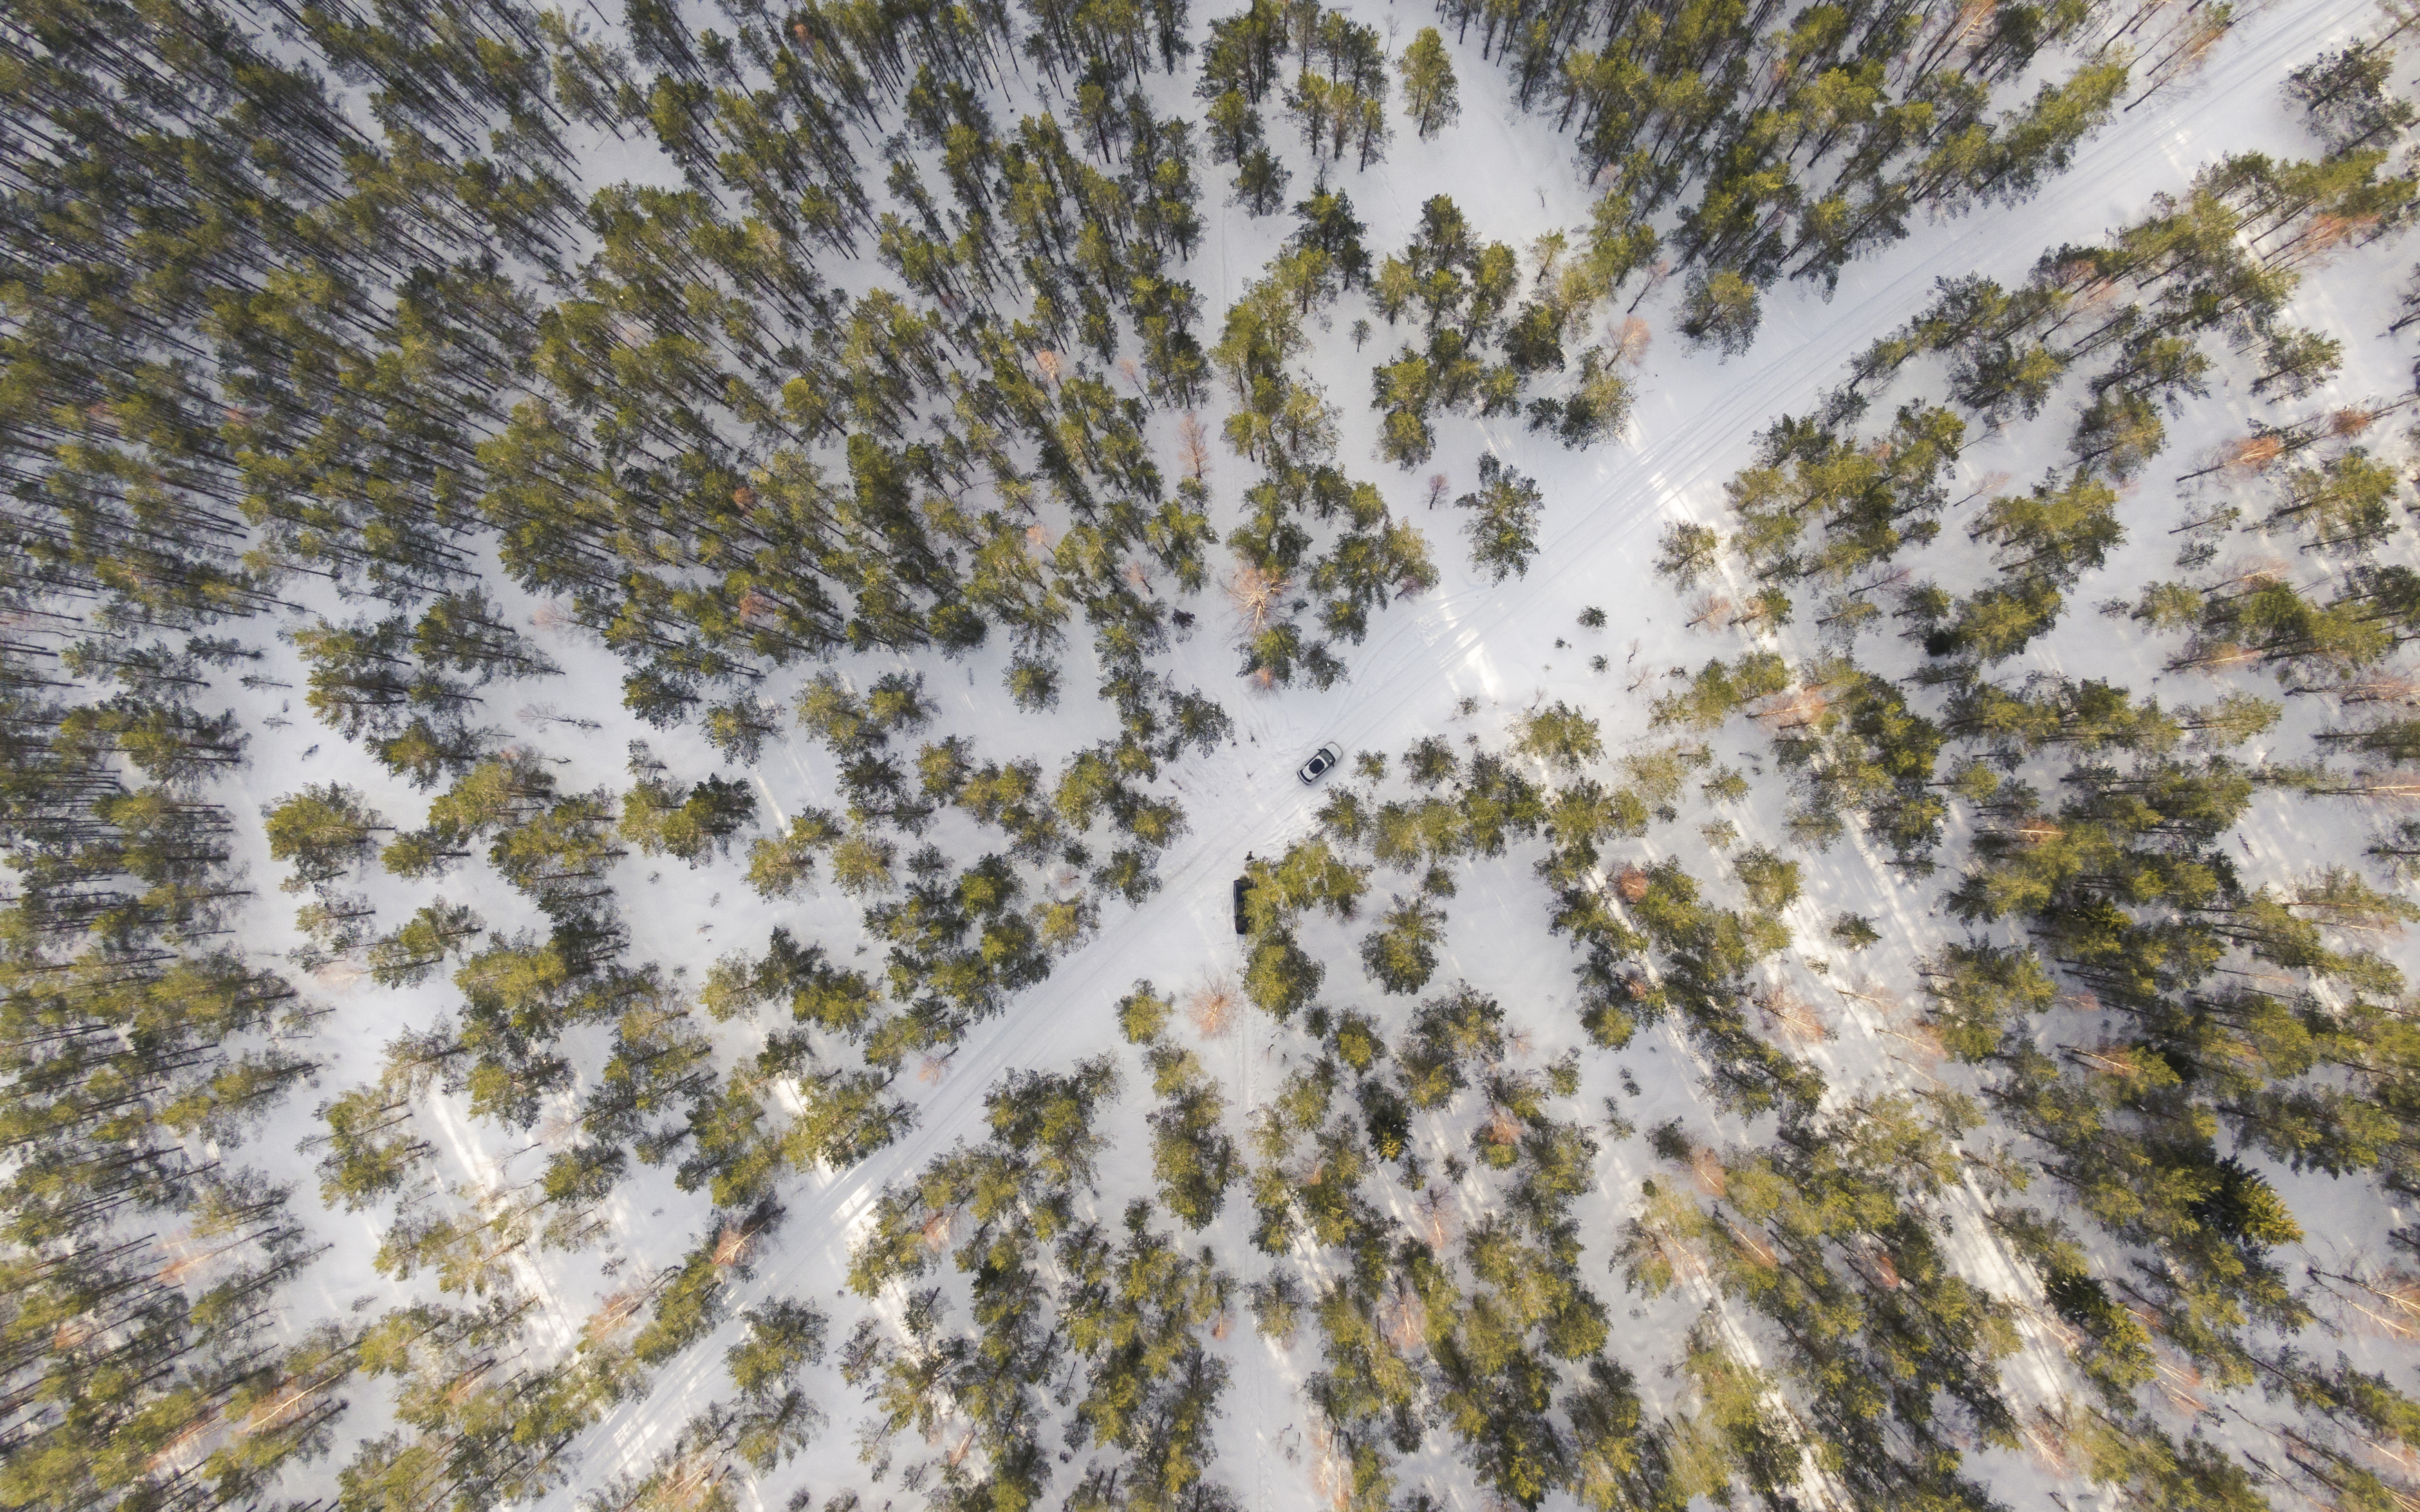 #harjumaa #kõnnusuursoo #eesti #estonia #swamp #eestirabad #bog #bogs #nature #loodus #eestiloodus #ilusadeestipaigad #hikingtrails #hikingtrail #winterwonderland #wintertrail #nature_of_estonia #dronephotography #drone #dji #djiphotography #estoniafroma, Nikolai Mordan